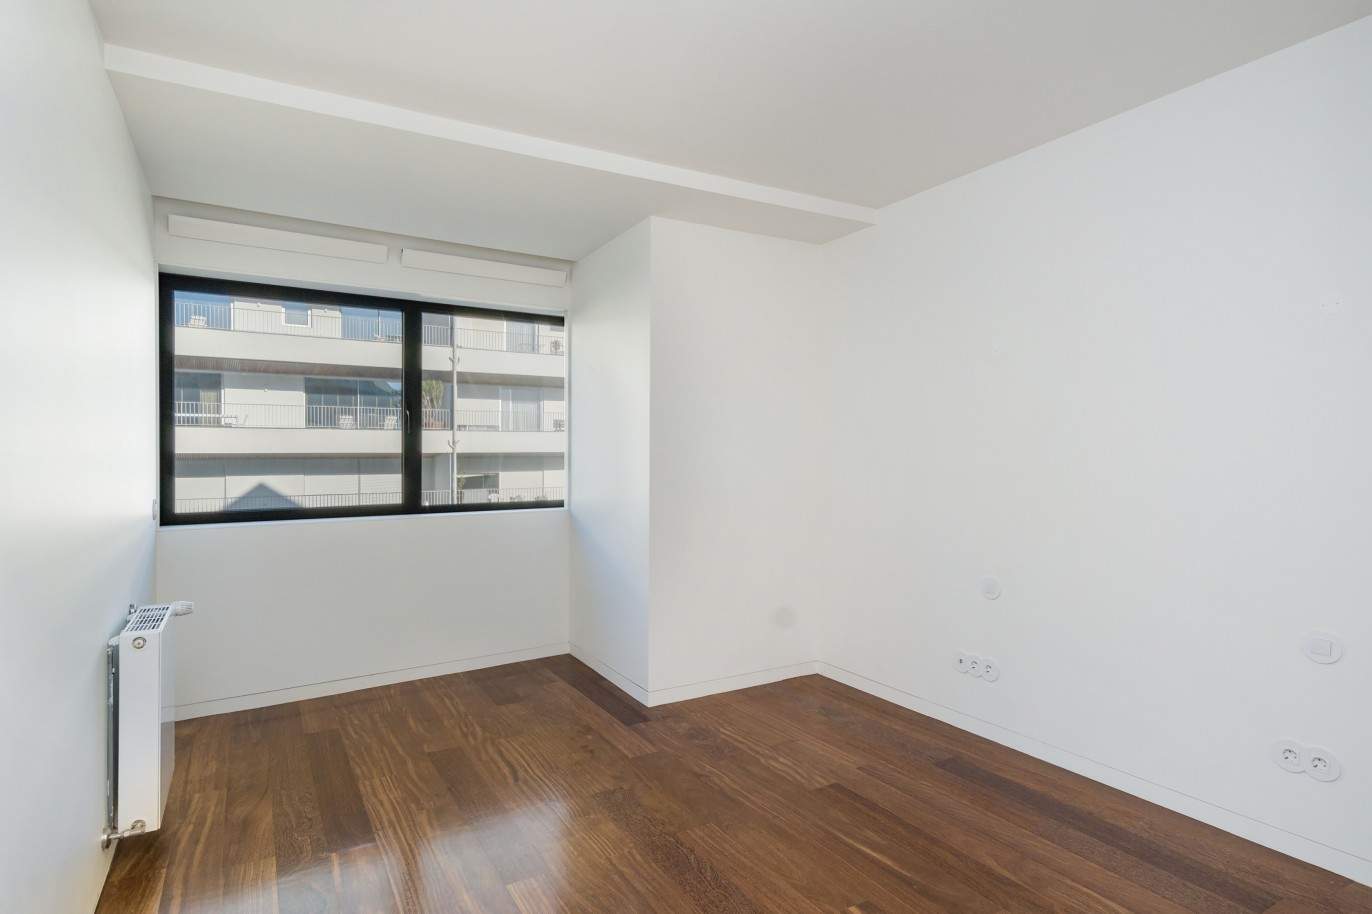 Verkauf: Neue Wohnung mit Balkon in 2. Meereslinie, Foz do Douro, Porto, Portugal_211873